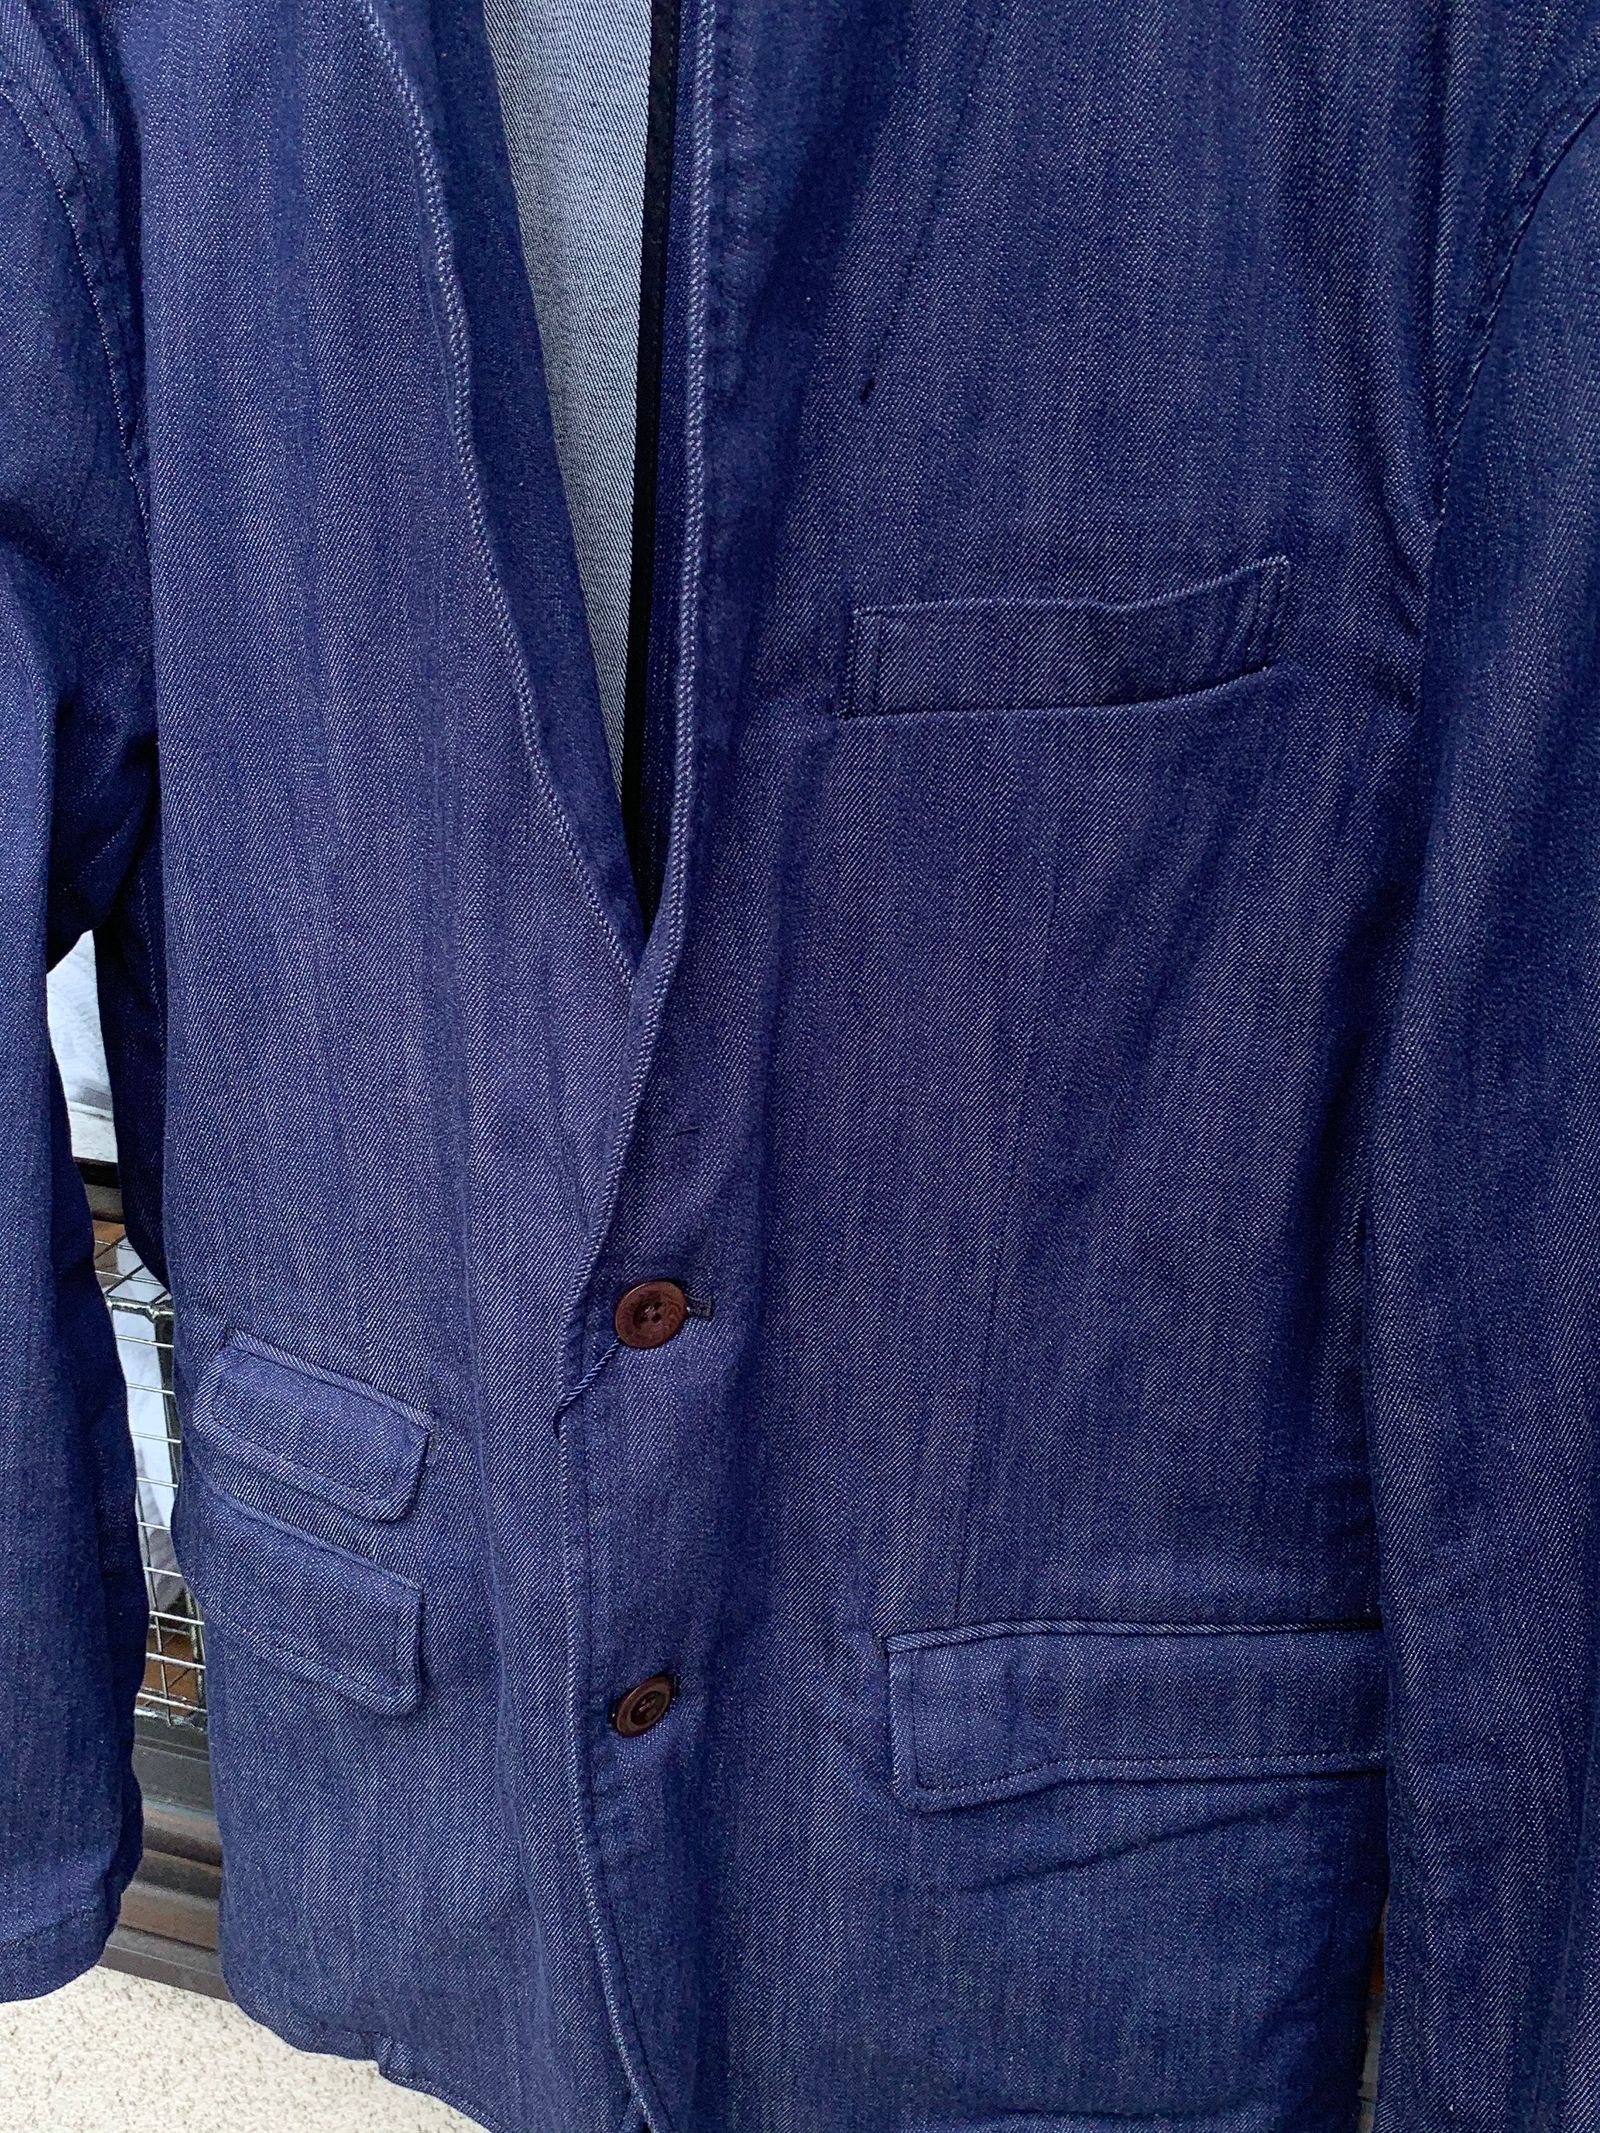 JAPAN BLUE JEANS - SHIN-DENIM / イージー テーラードジャケット 